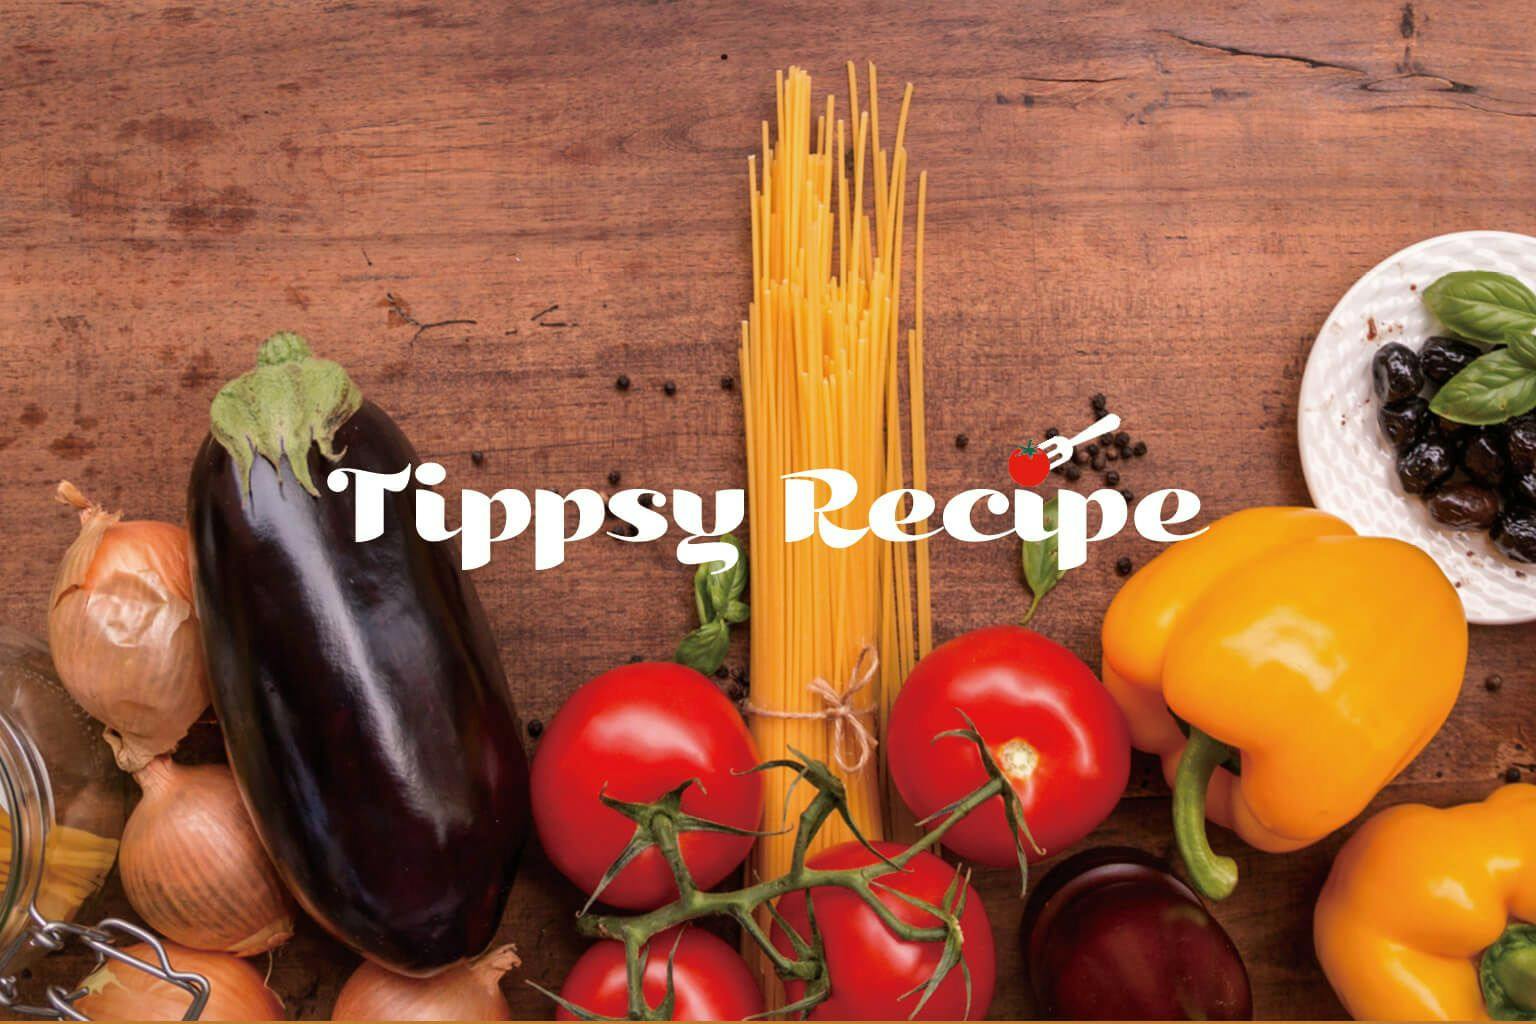 Tippsy recipe